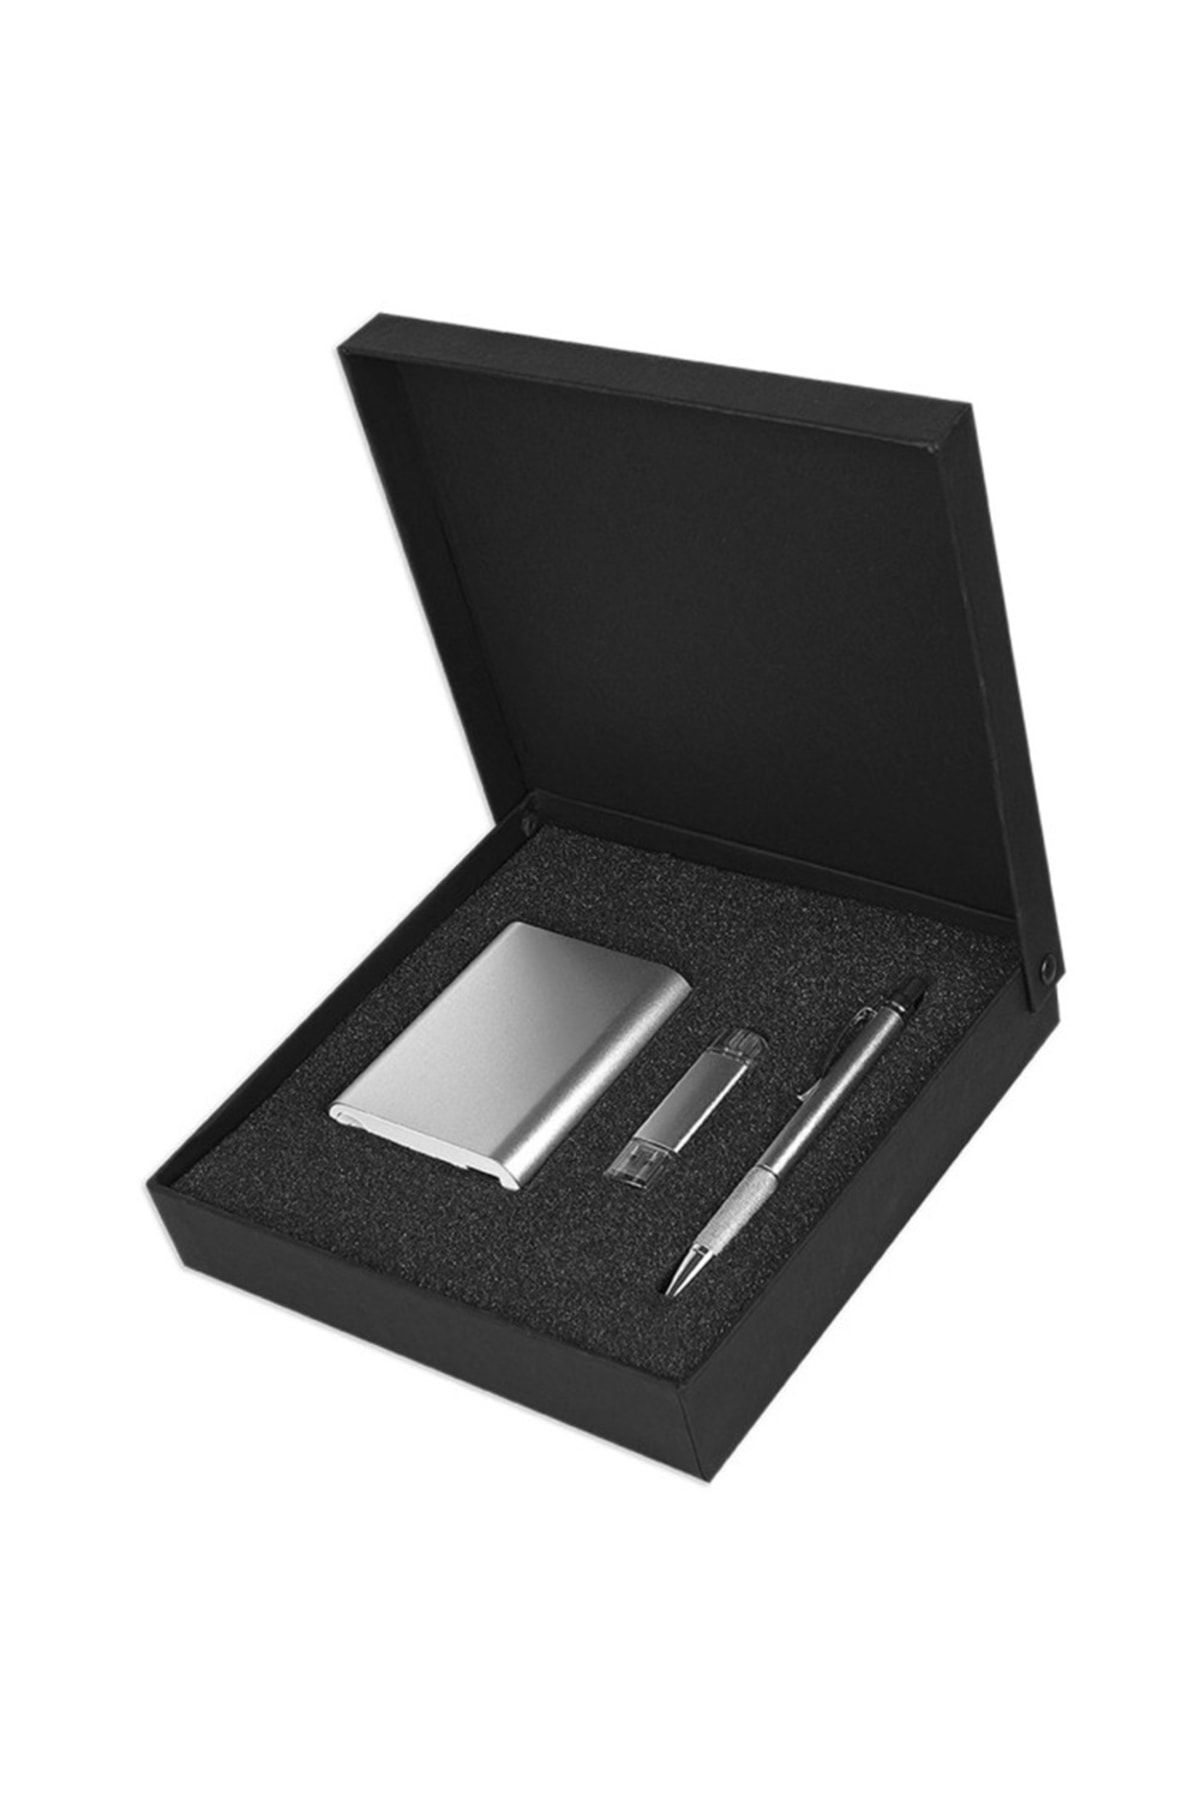 HEPBİMODA Powerbank - Kalem - Usb Flash Bellek 32 Gb Özel Hediyelik Vip Set Gümüş